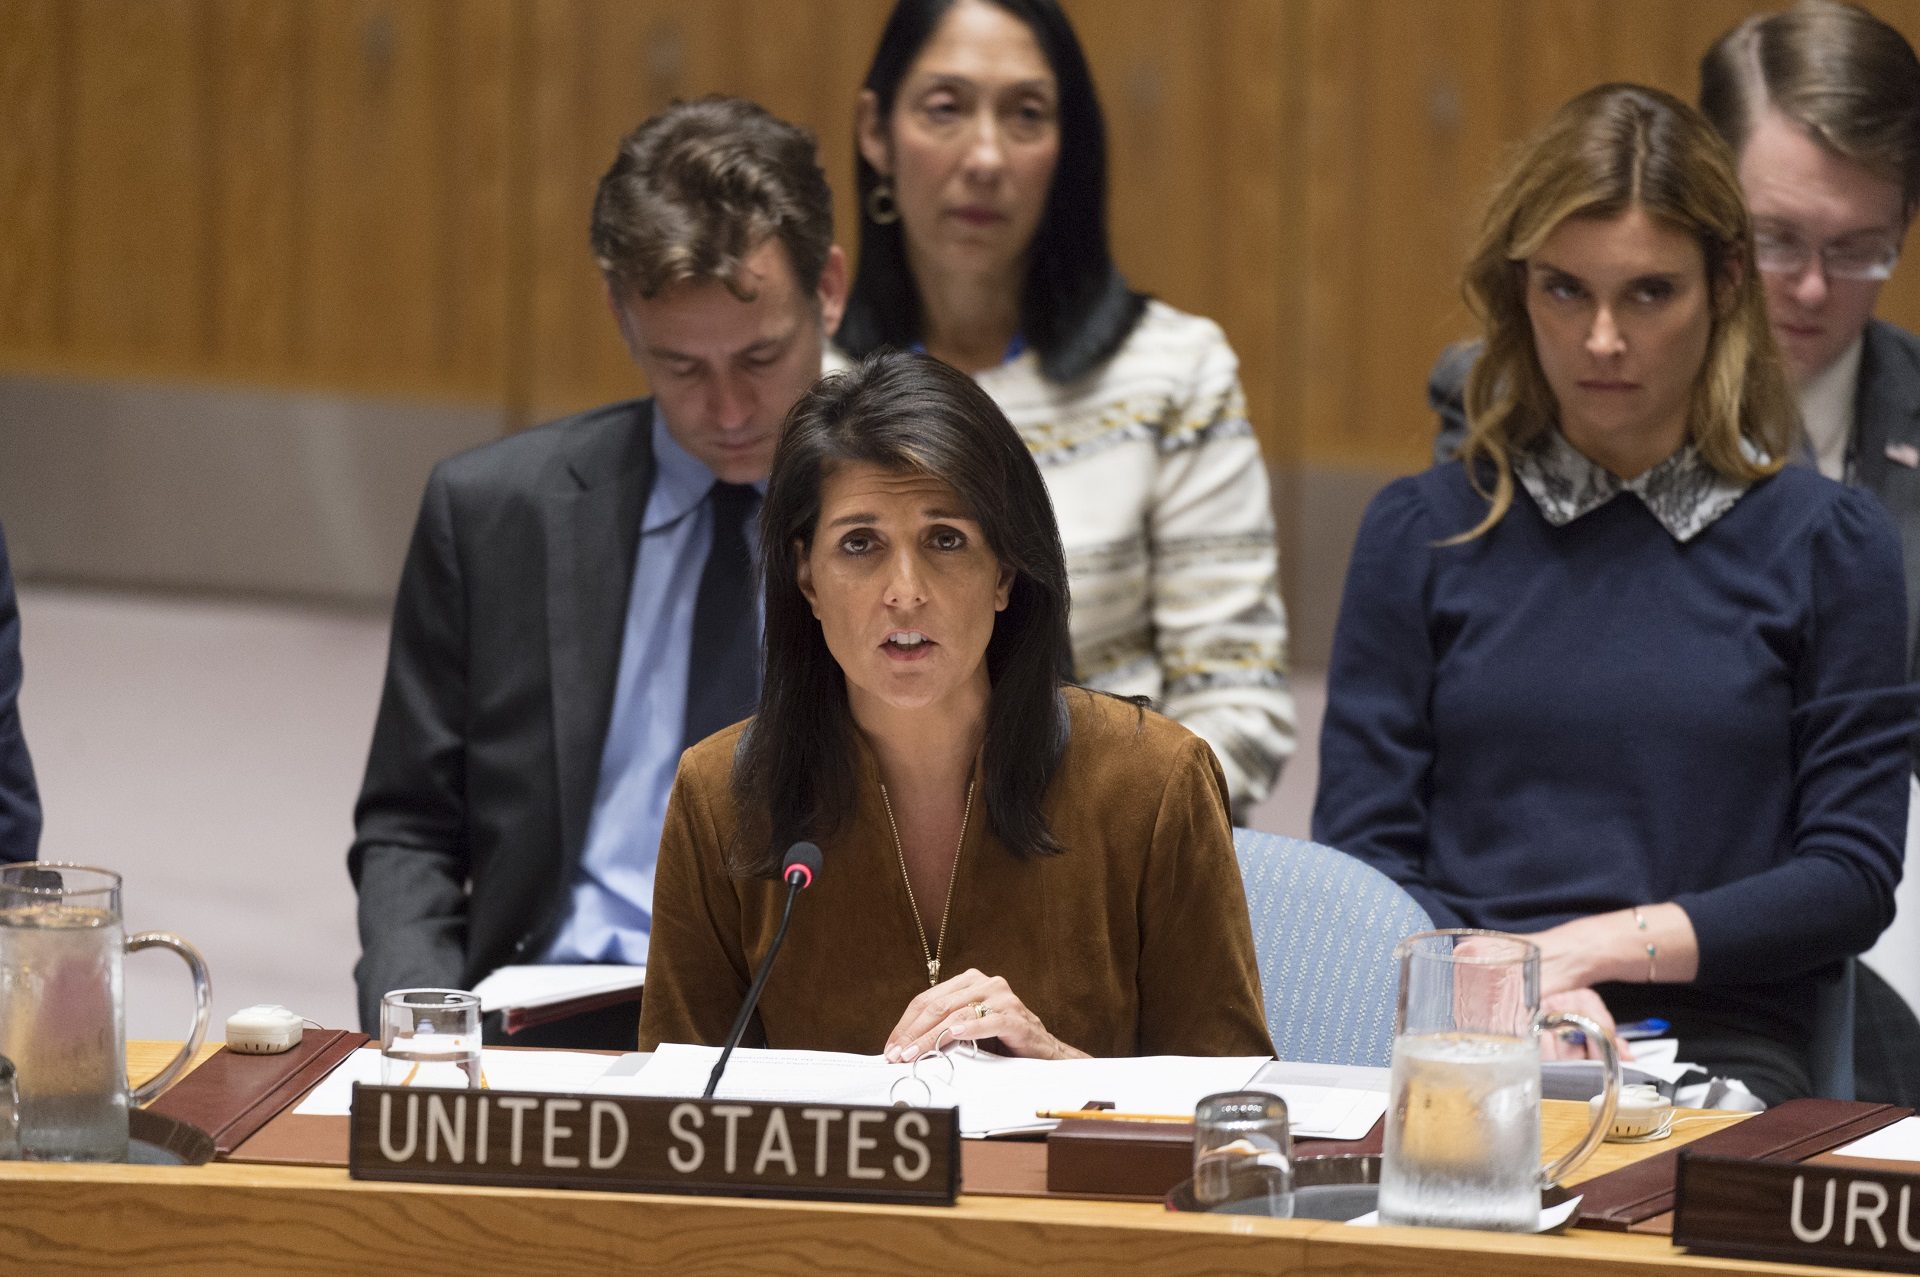 Nikki Haley, représentant les Etats-Unis à l'ONU, a annoncé une aide directe aux minorités religieuses d'Irak. | © UN Photo/Rick Bajornas